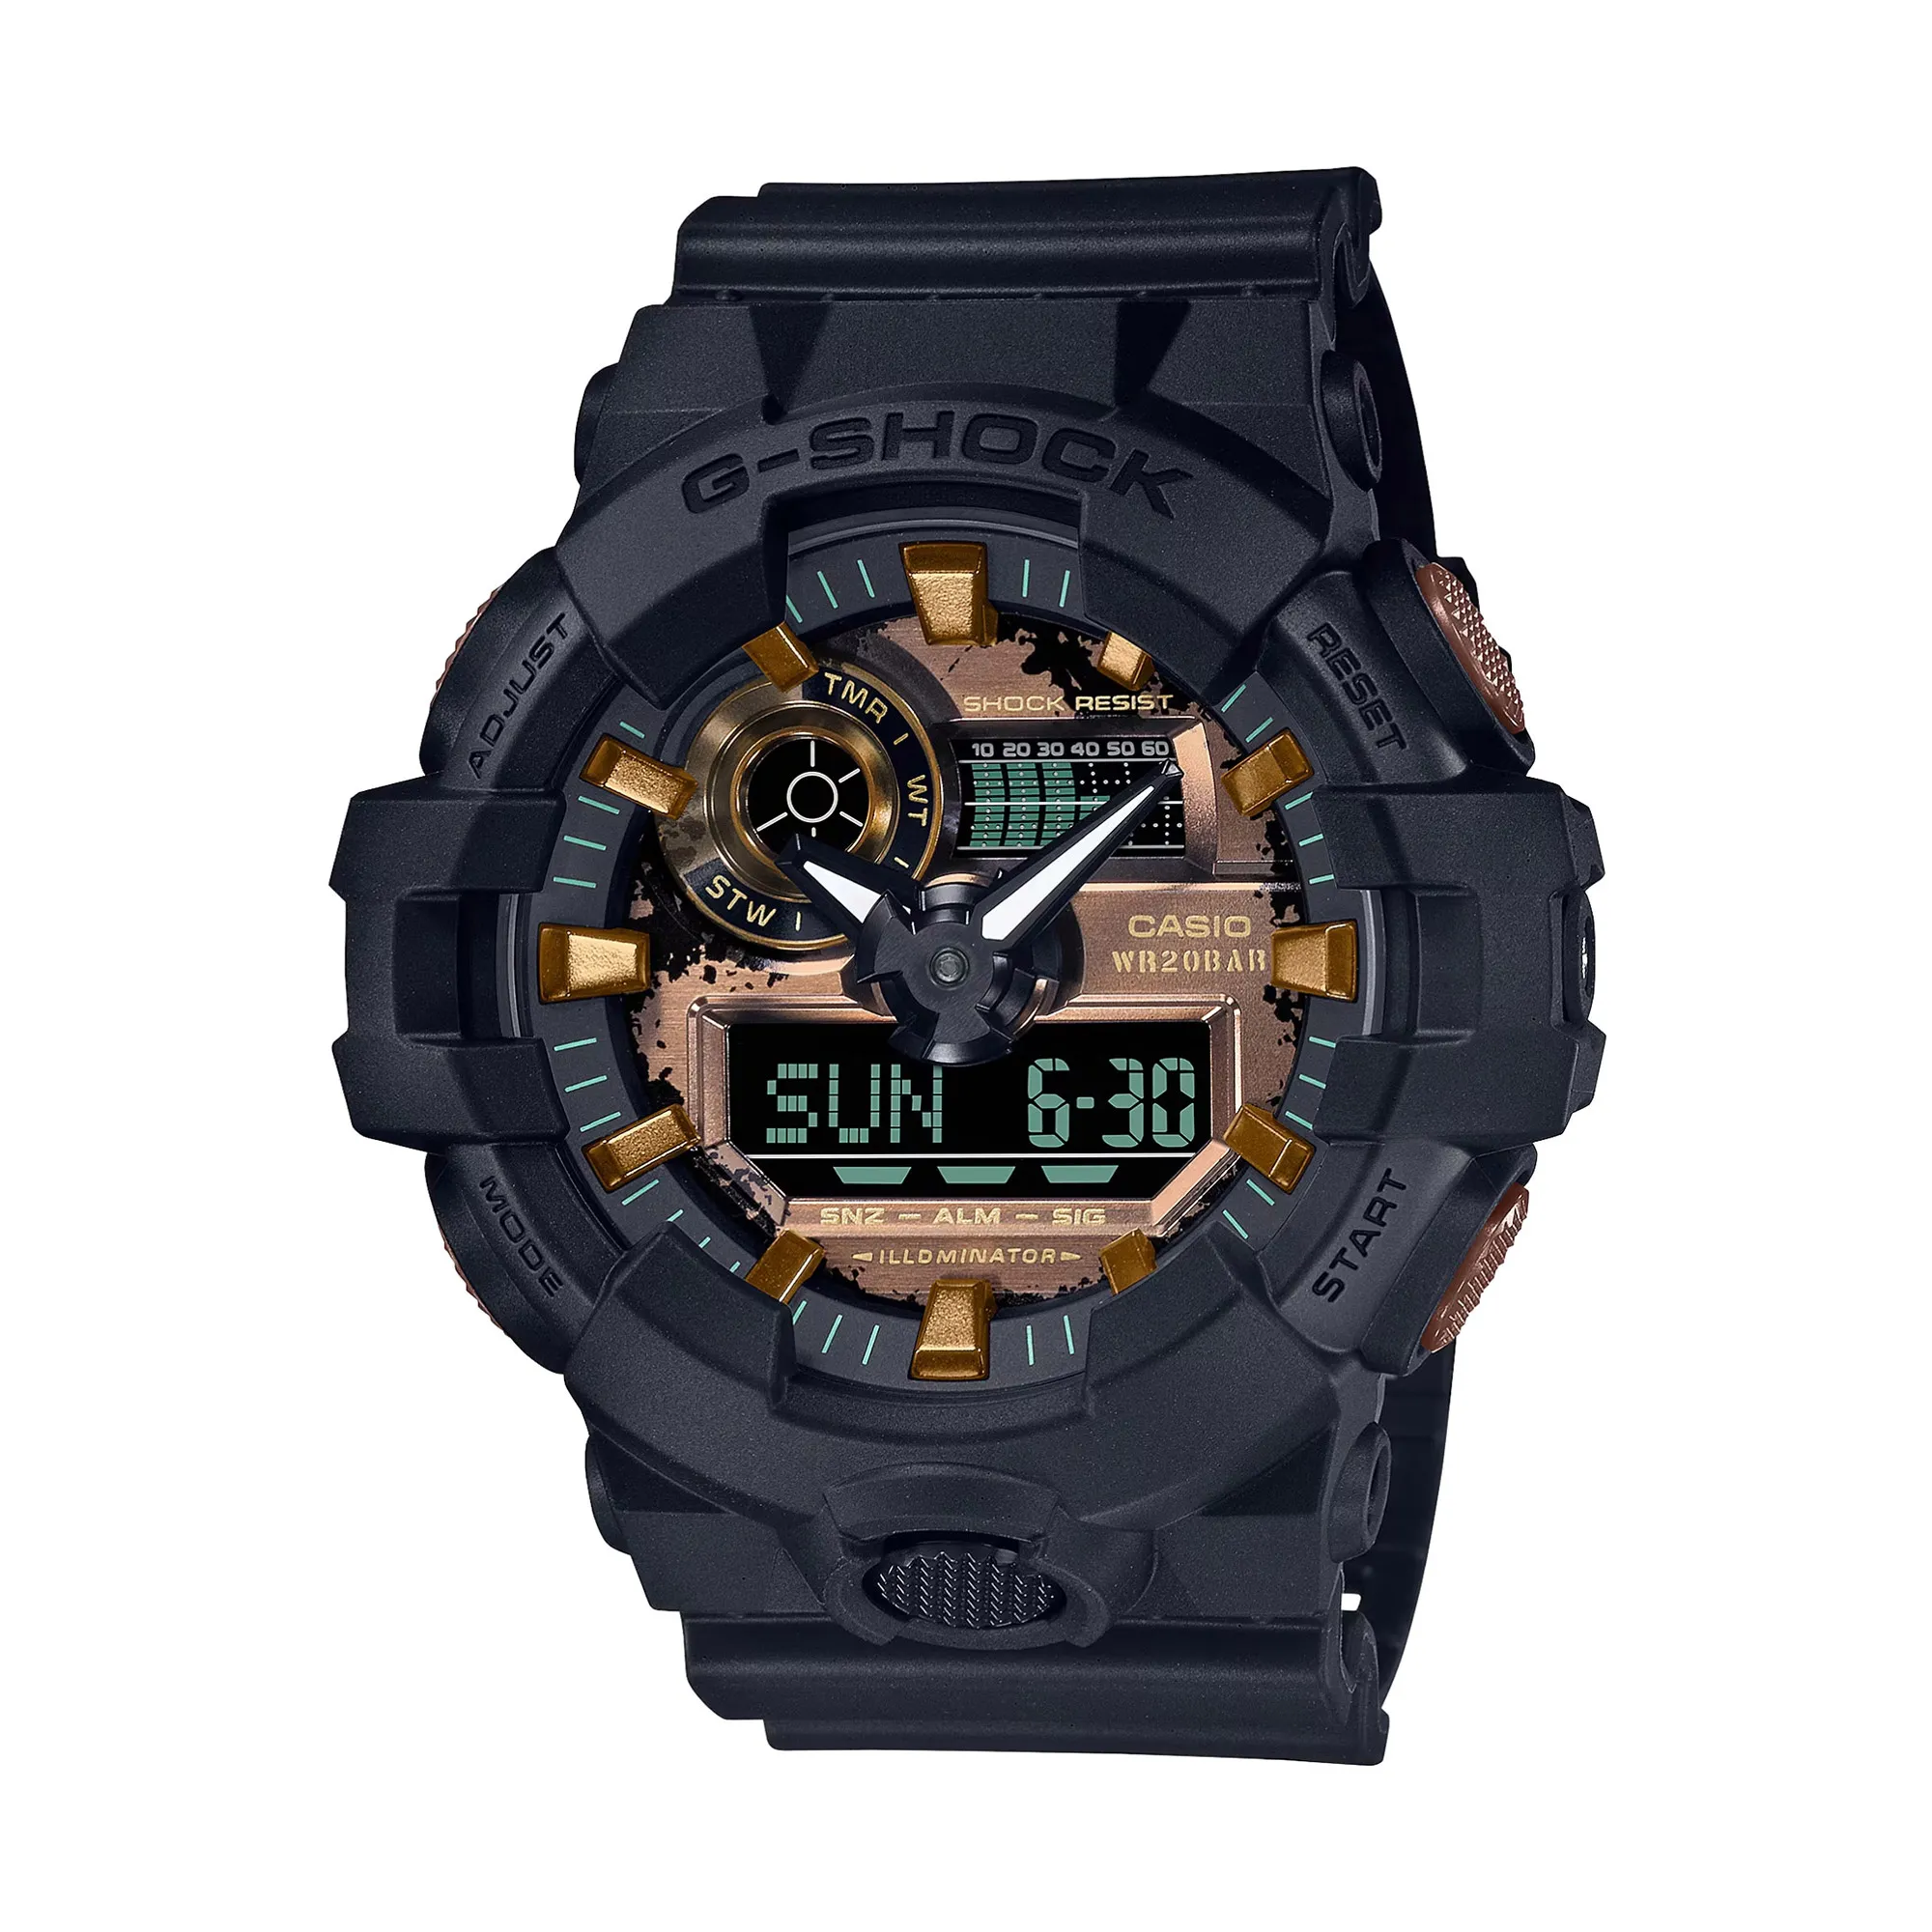 Watch CASIO G-Shock ga-700rc-1aer